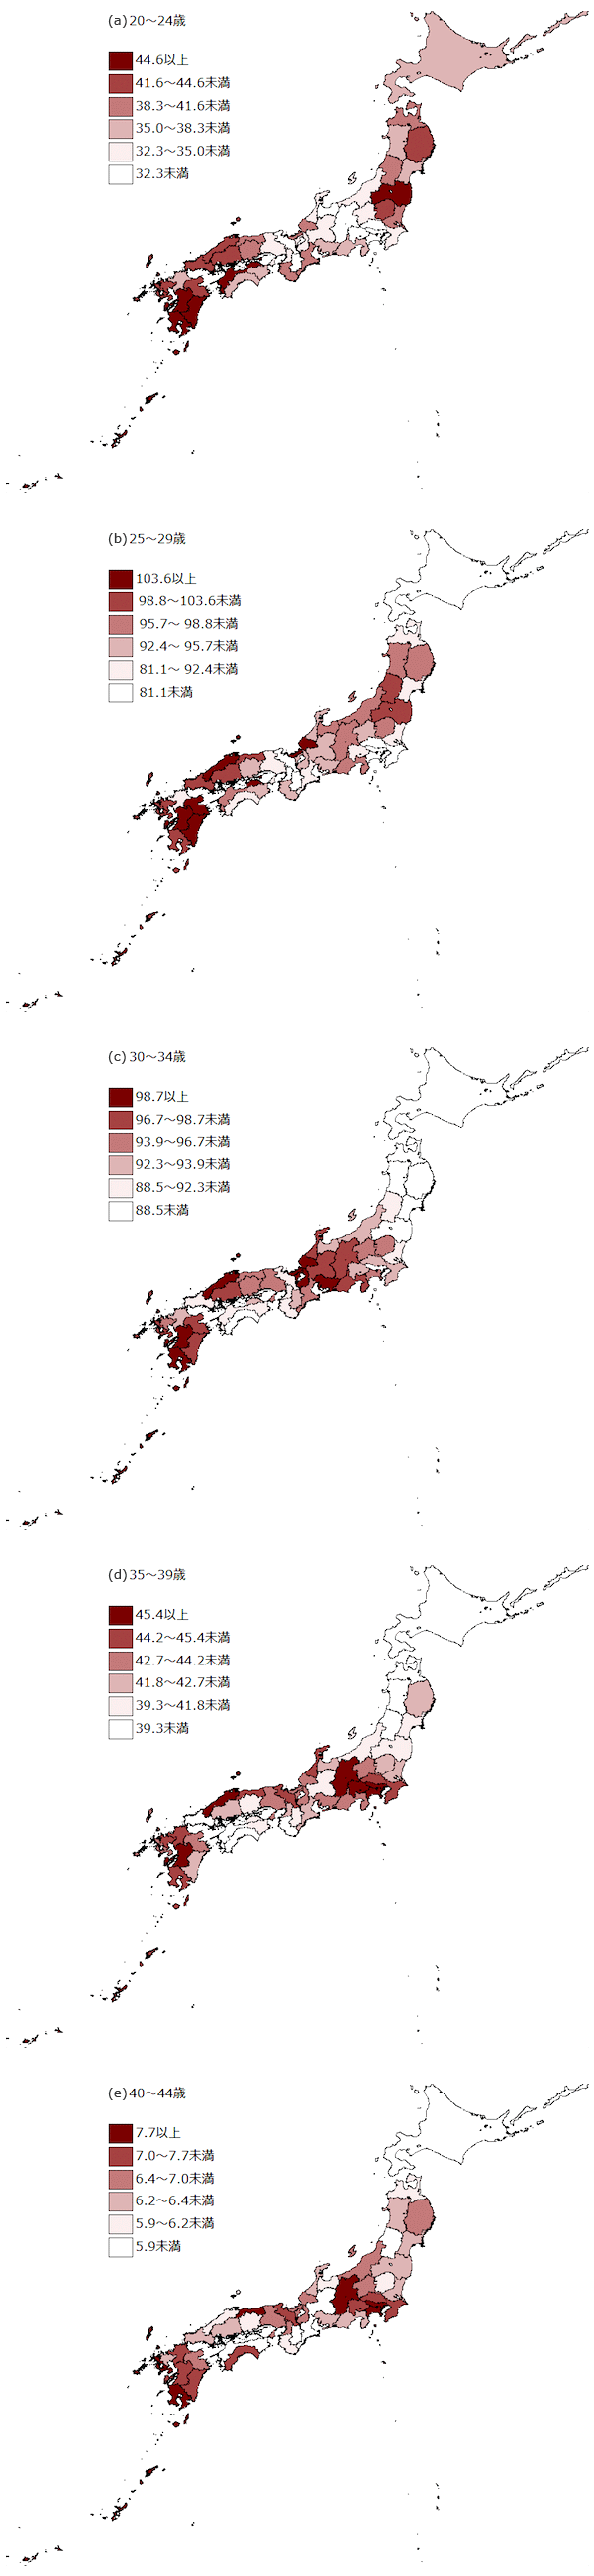 図6：都道府県・年齢階級（5歳階級）別の出生率（女性人口千対）